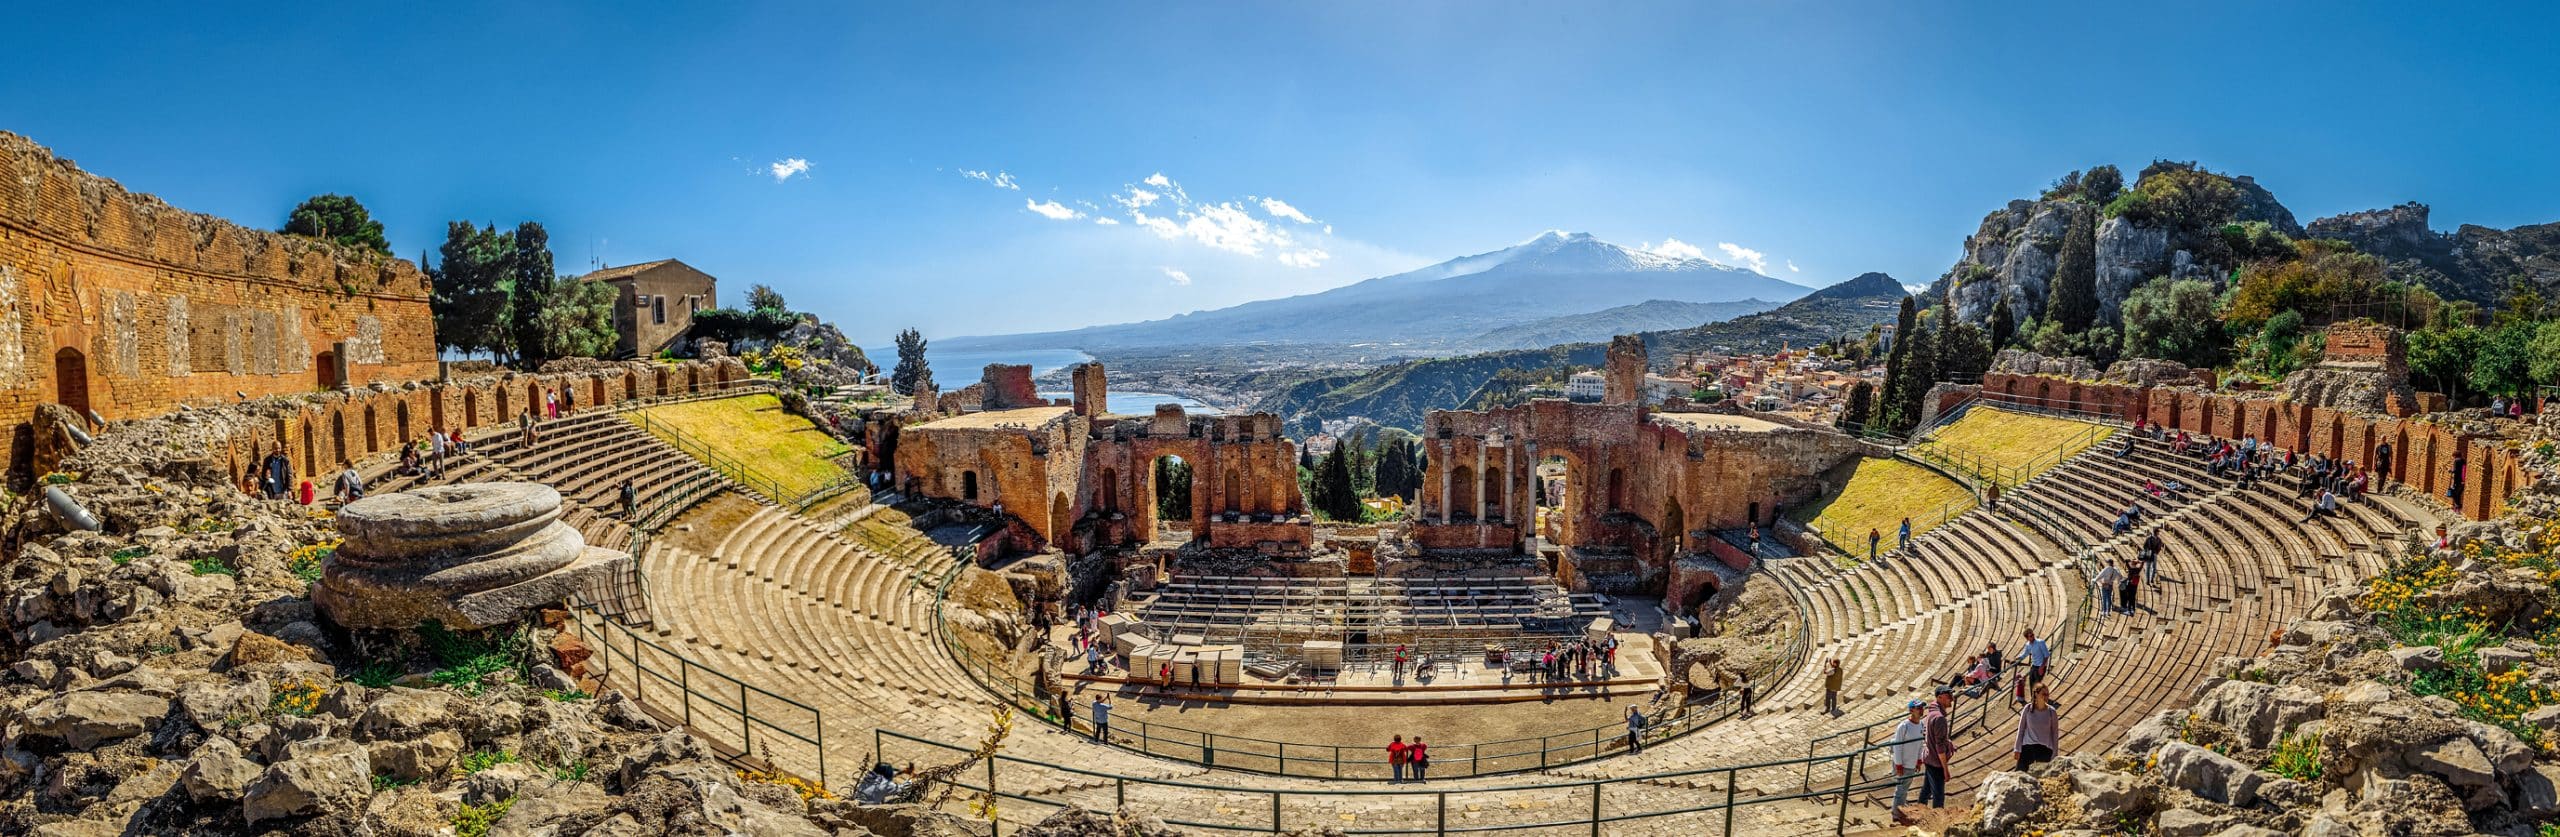 Taormina - antické divadlo s výhledem na Etnu